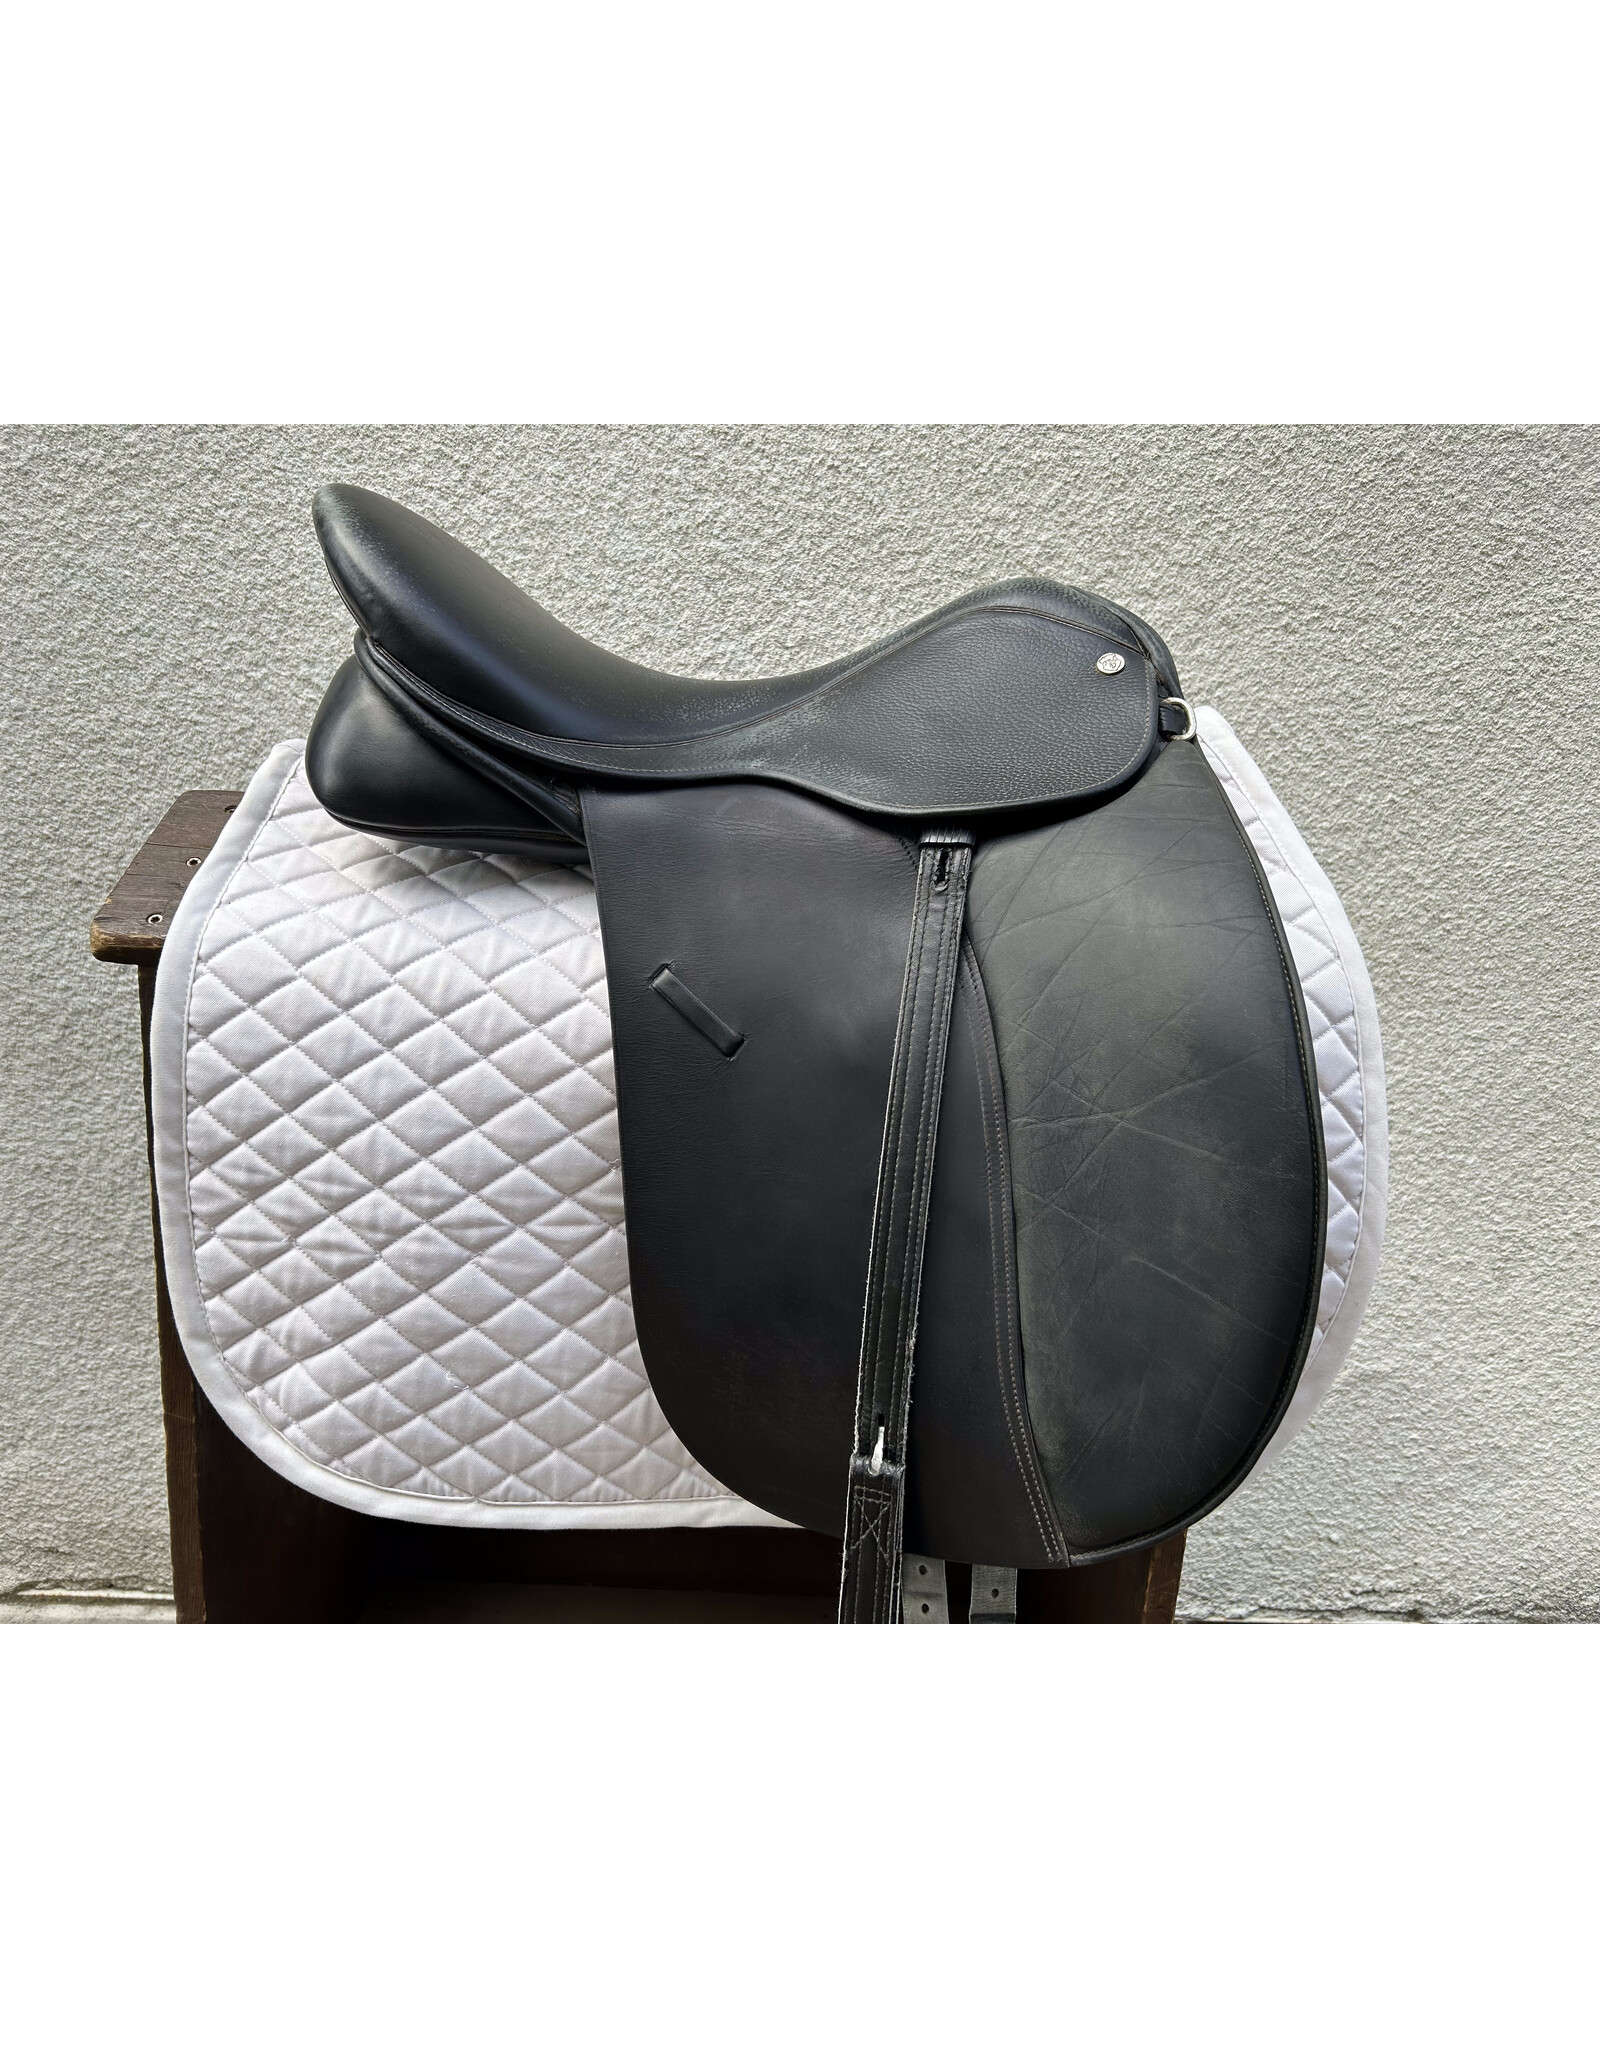 Klimke Dressage Saddle 18.5" Seat 4.5" Gullet